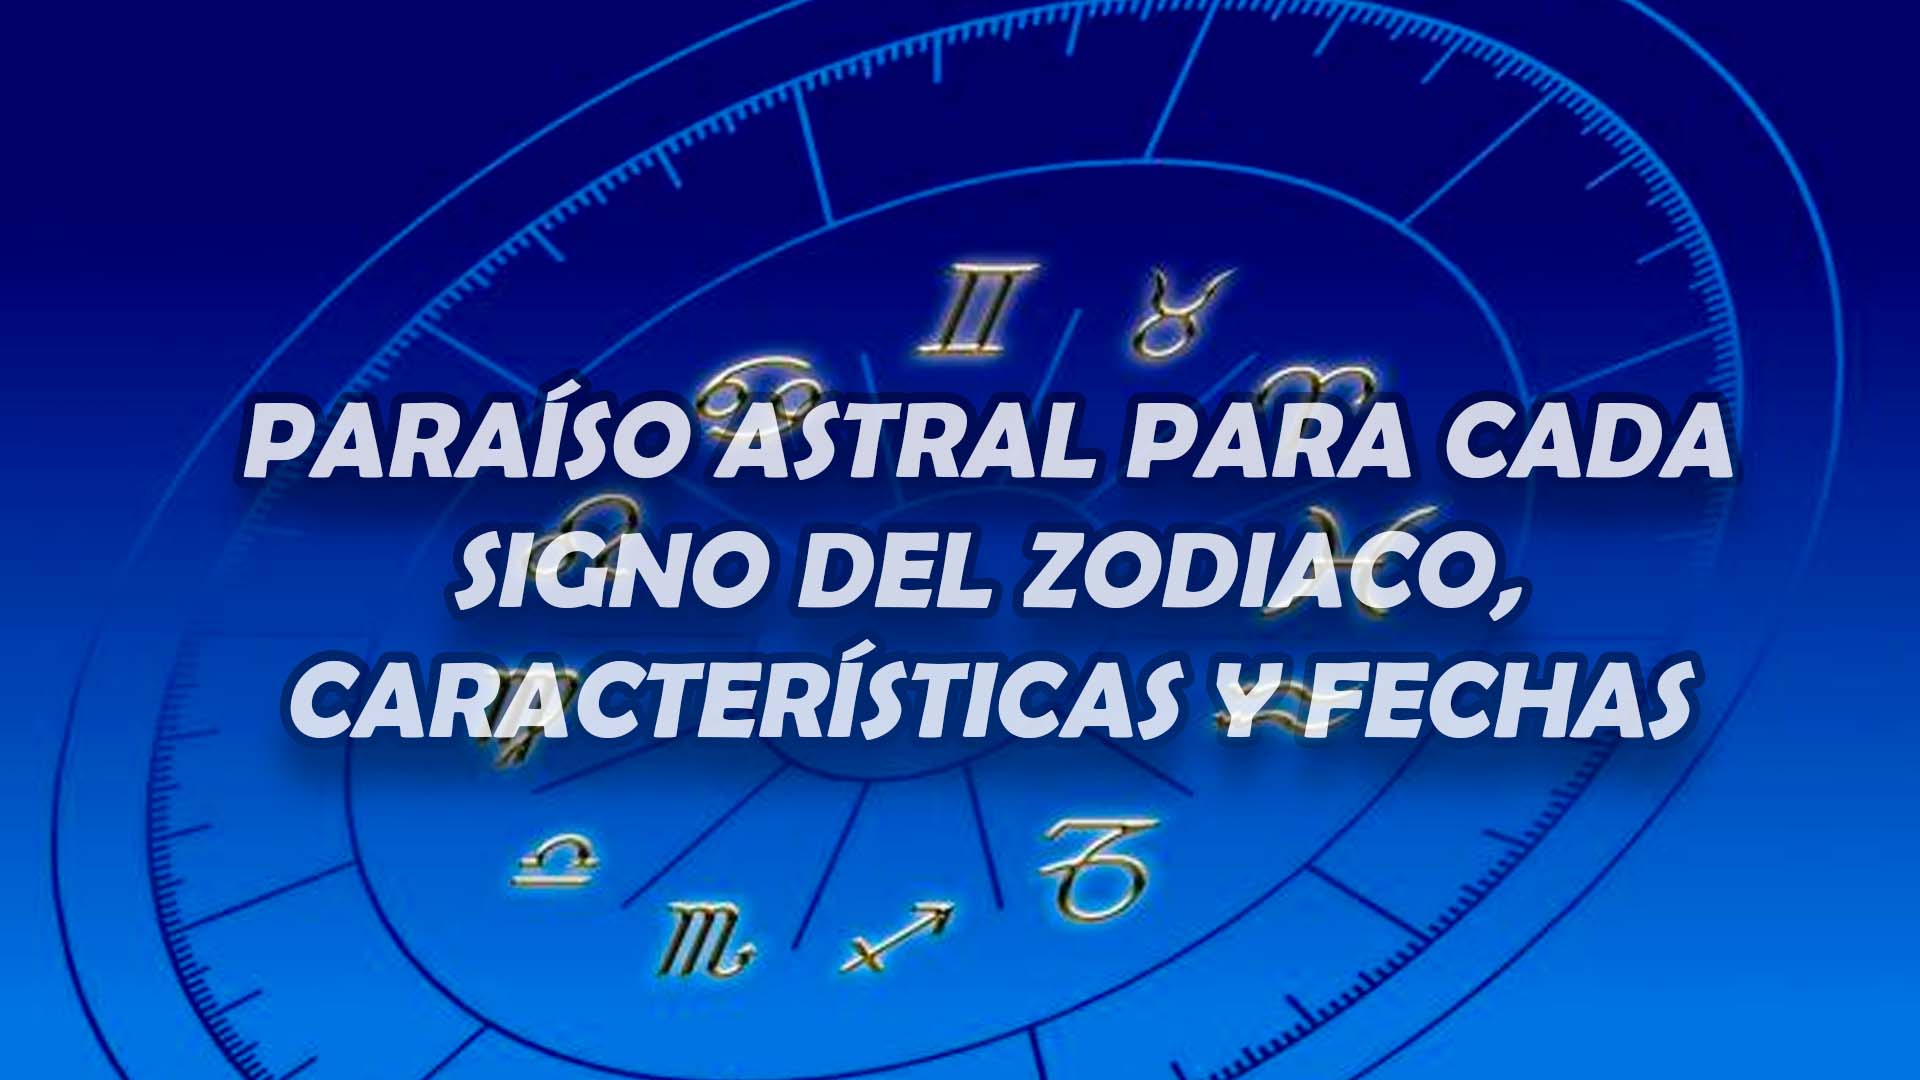 Paraíso Astral para cada signo del zodiaco, características y fechas